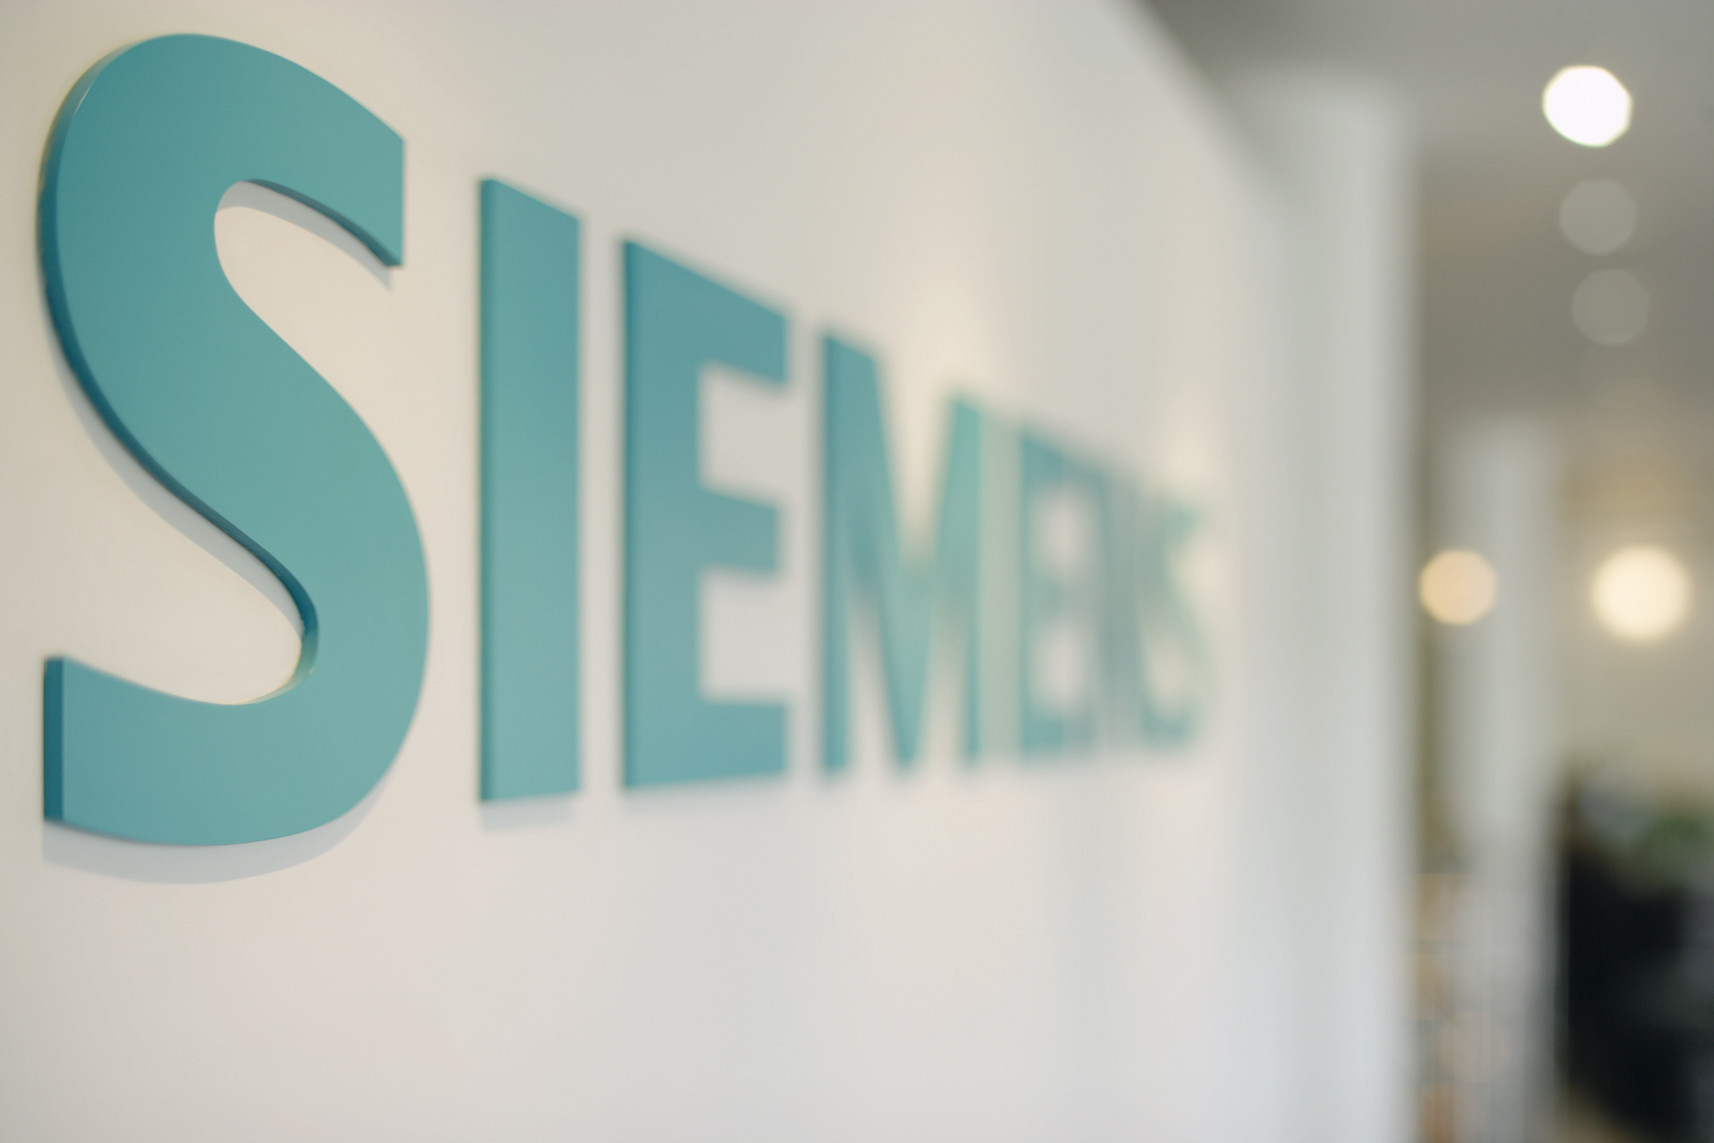 Δίκη Siemens: Την αποβολή του Δημοσίου και του ΟΤΕ ζήτησε η υπεράσπιση